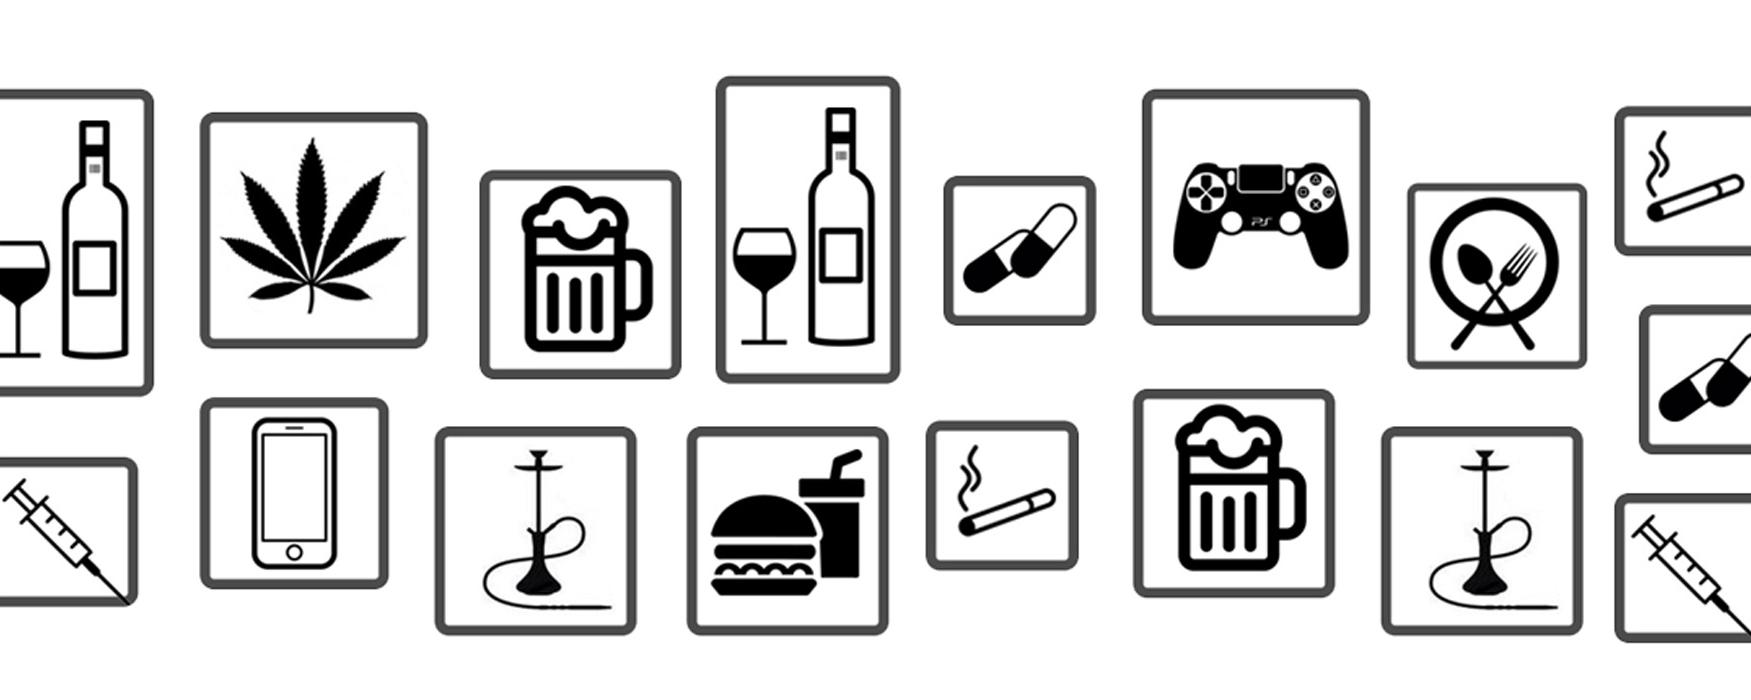 Grafik: mit mehreren Symbolen zum Thema Sucht und Abhängigkeiten, z.B. Zigaretten, Alkohol, Essen, Handy...